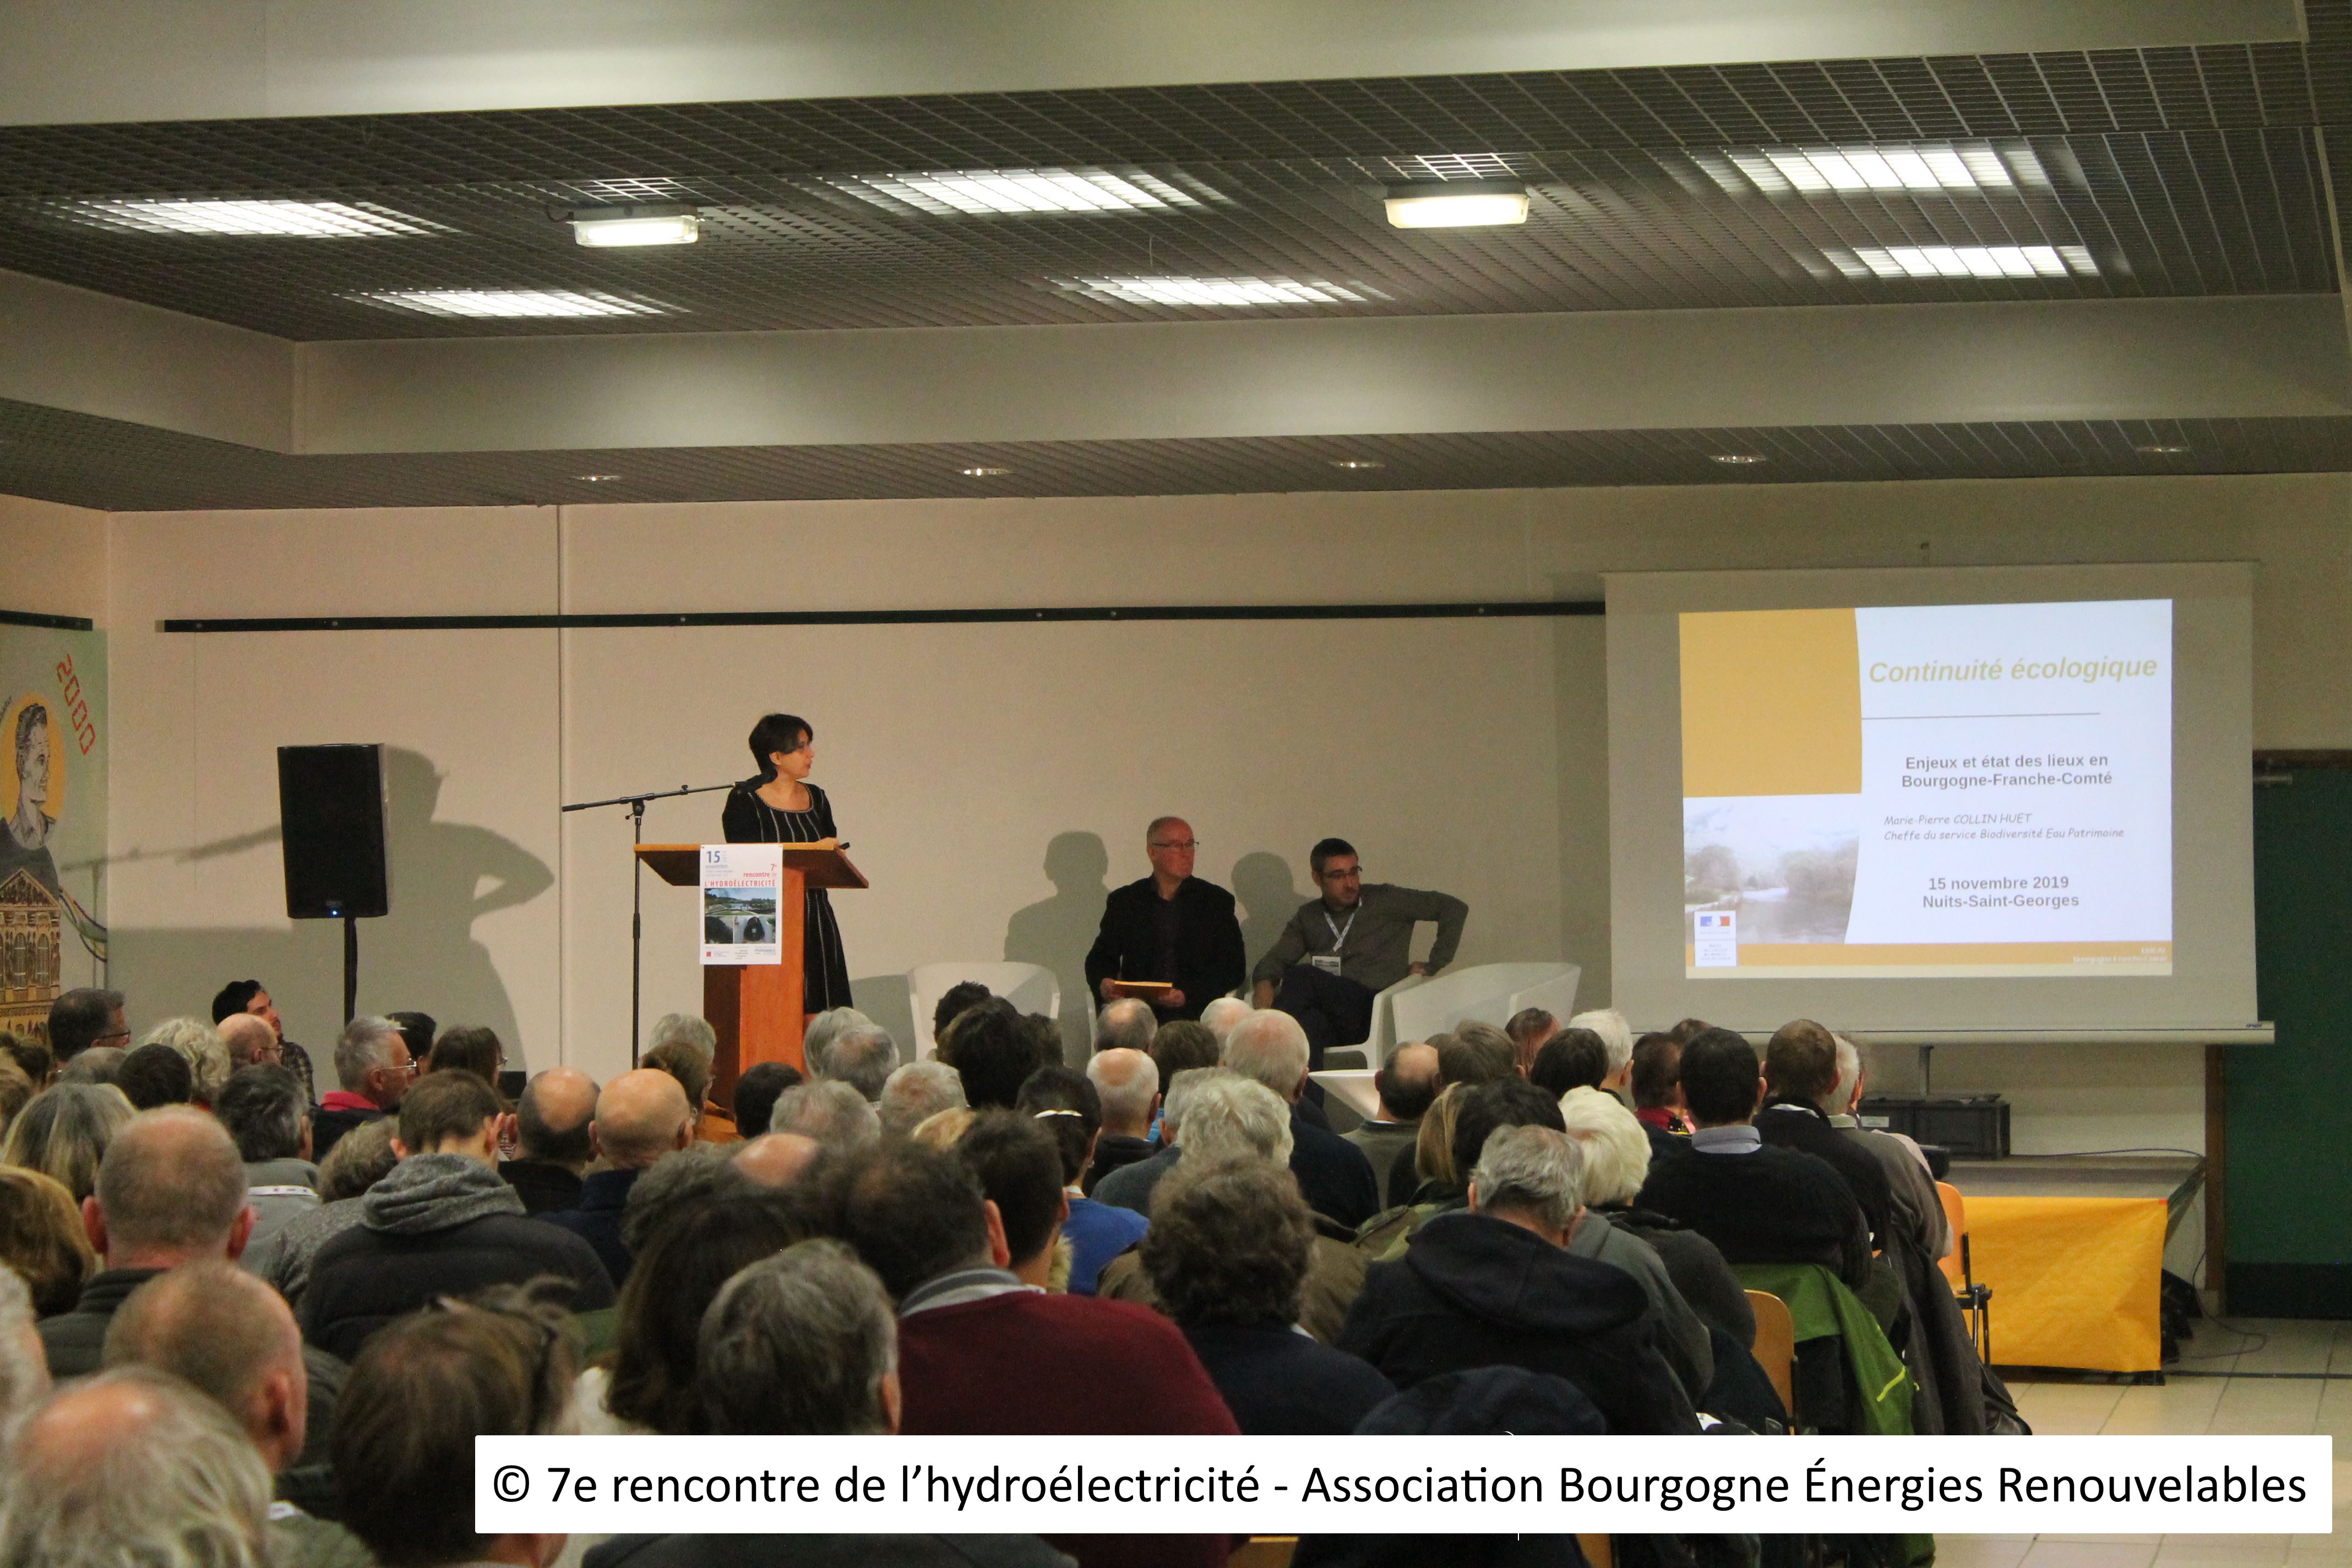 4 - © 7e rencontre de l’hydroélectricité - Association Bourgogne Énergies Renouvelables